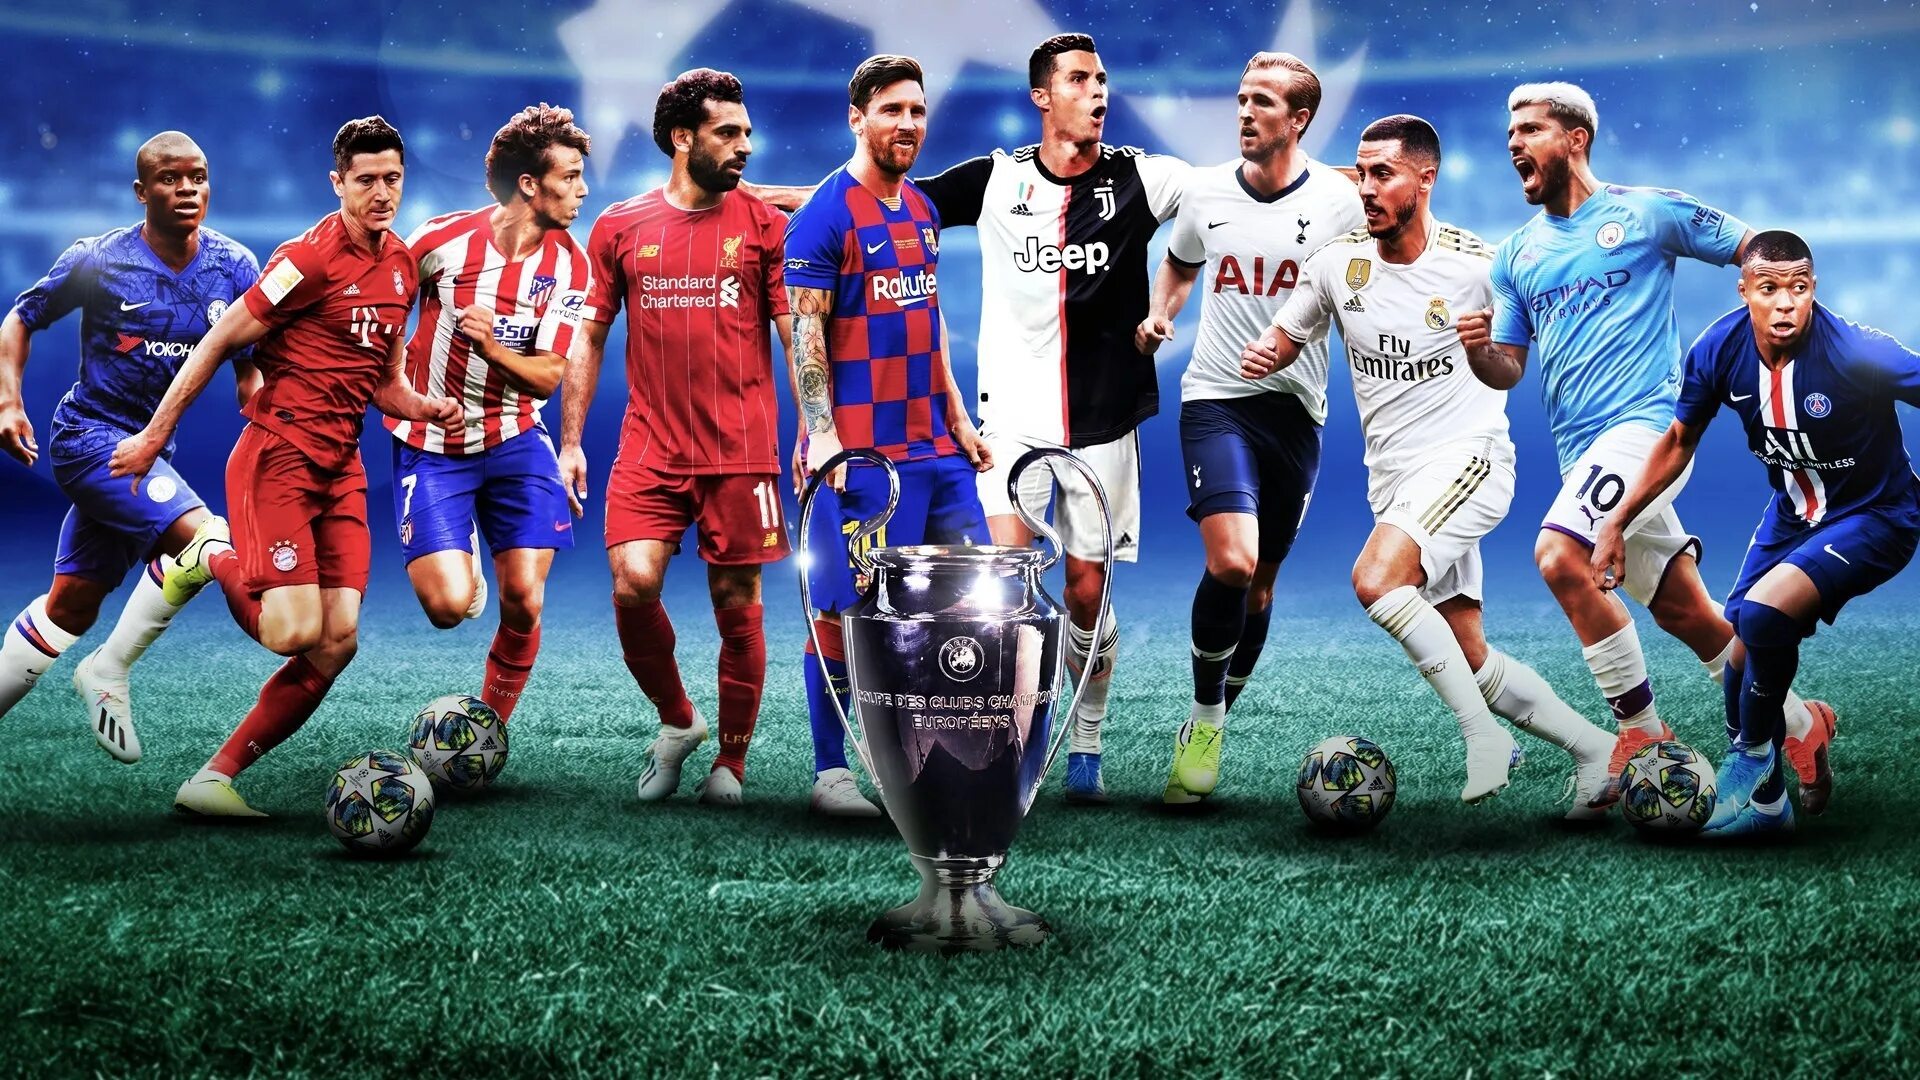 Про футбол 1. Лига чемпионов УЕФА 2019/2020. Футбольные обои. Картинки футболистов. Футбольные обои для рабочего стола.